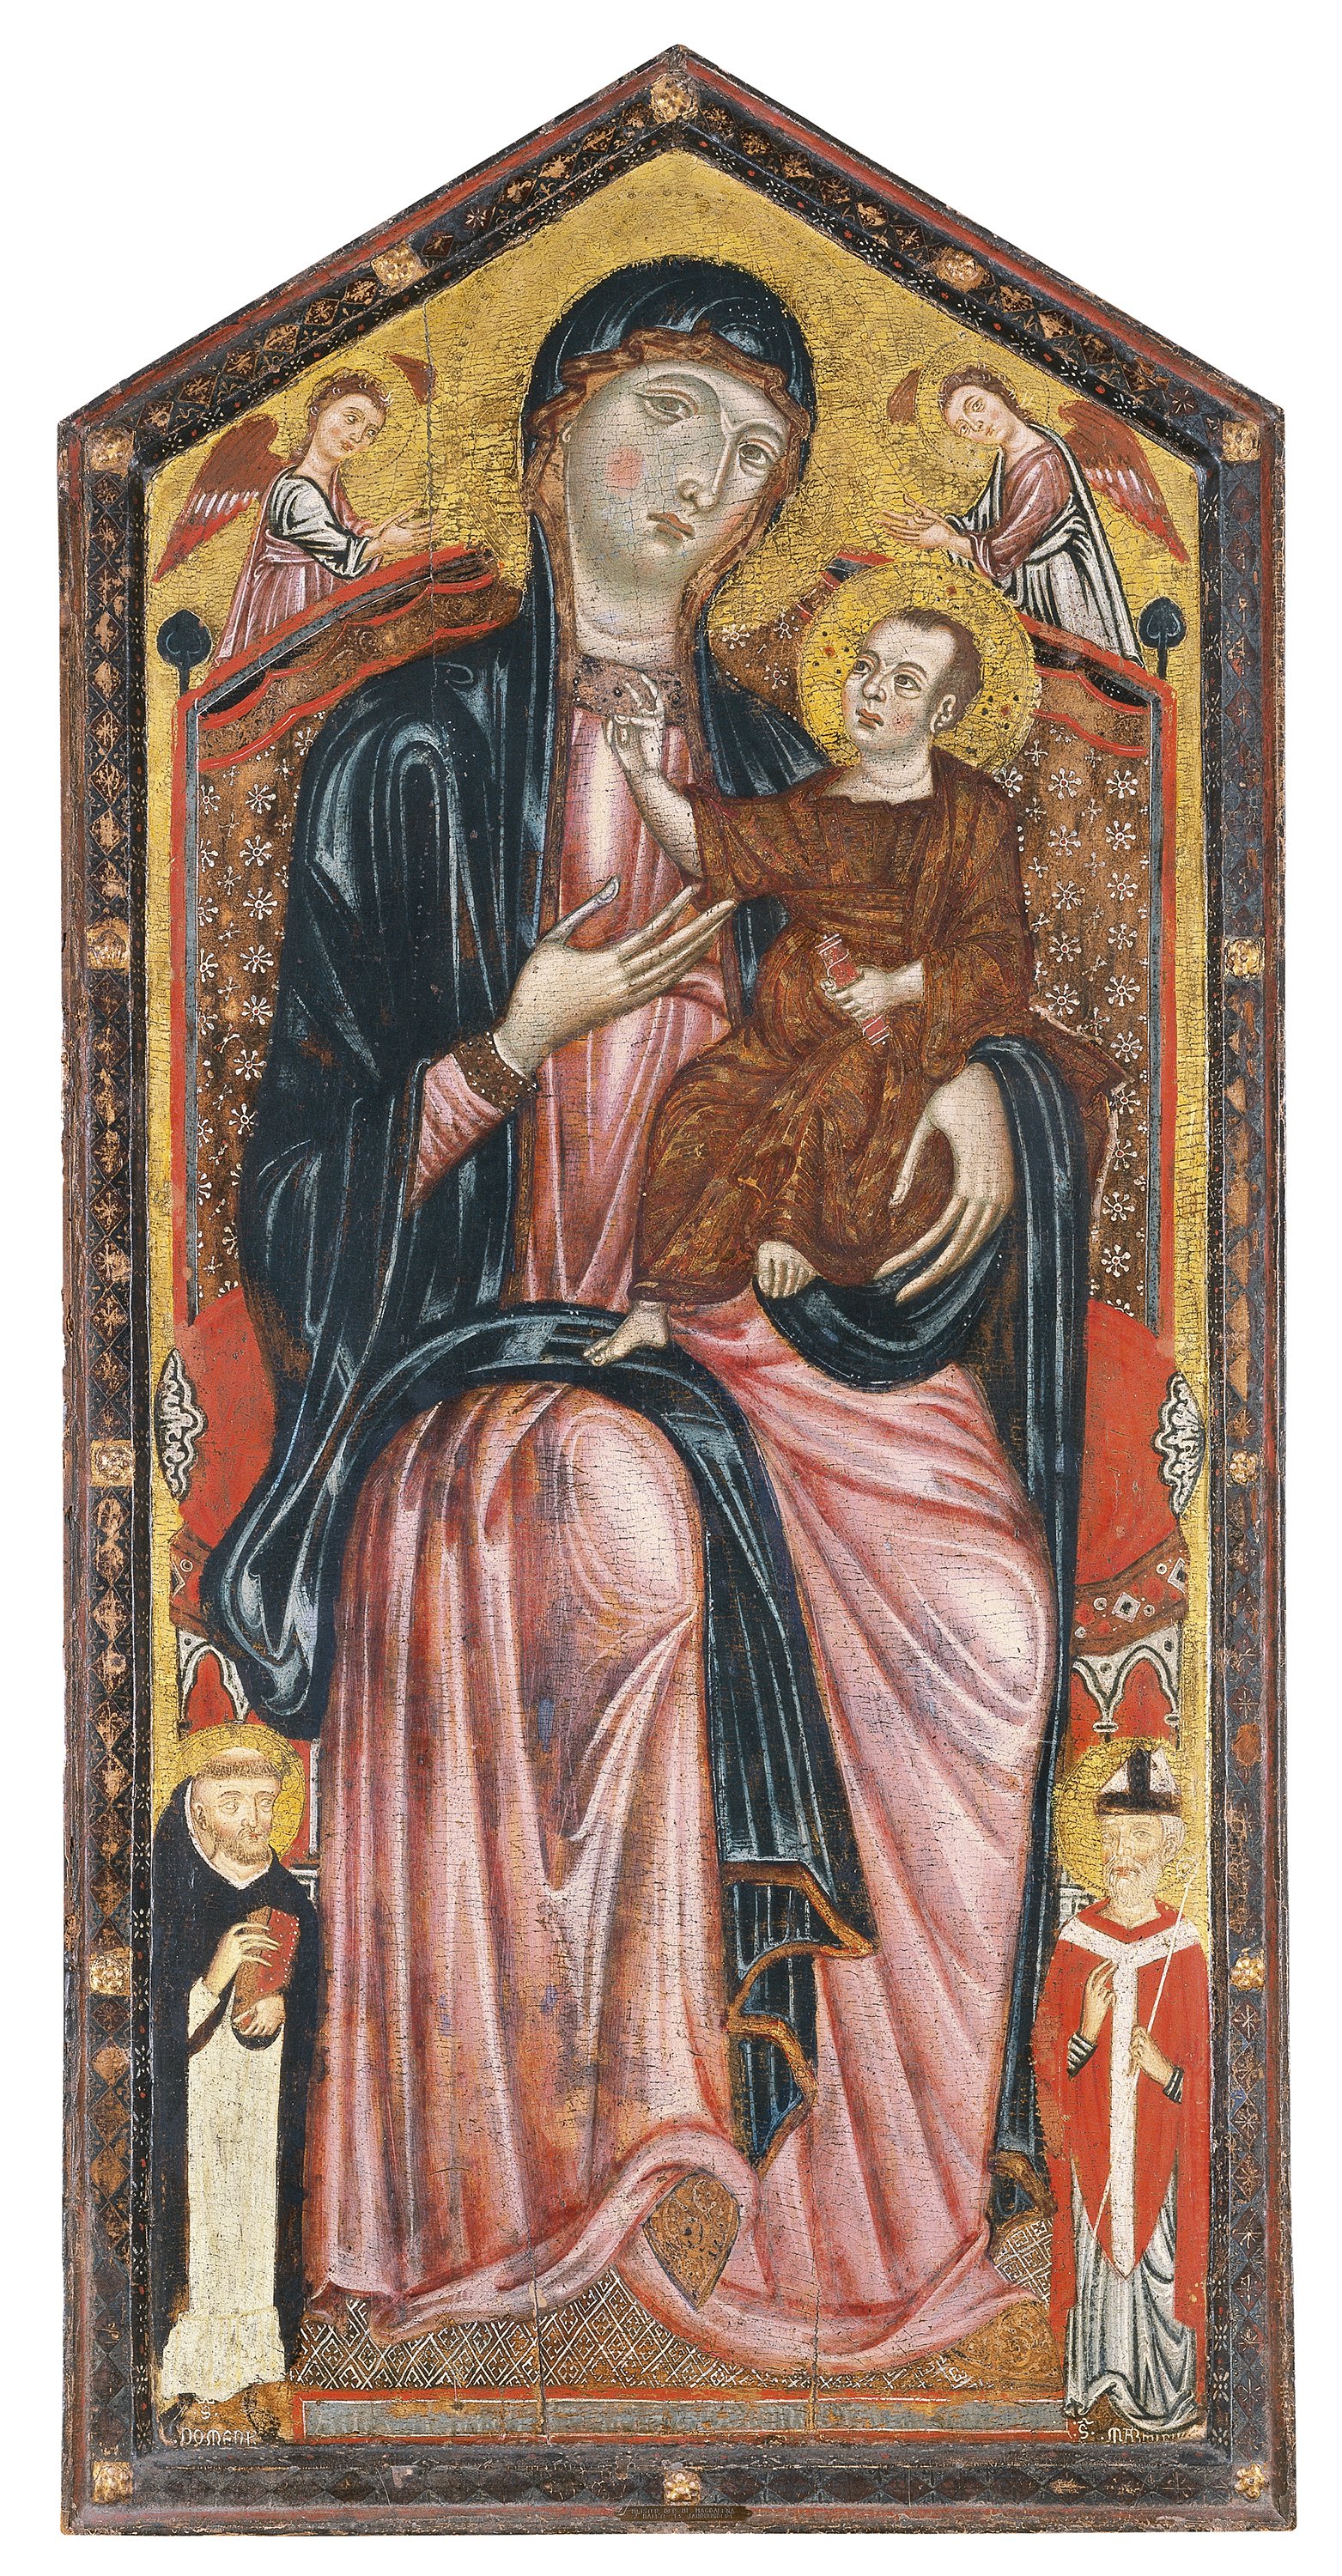 The Virgin and Child enthroned with Saints Dominic and Martin, and two angels. La Virgen y el Niño entronizados con santo Domingo, san Martín y dos ángeles, c. 1290